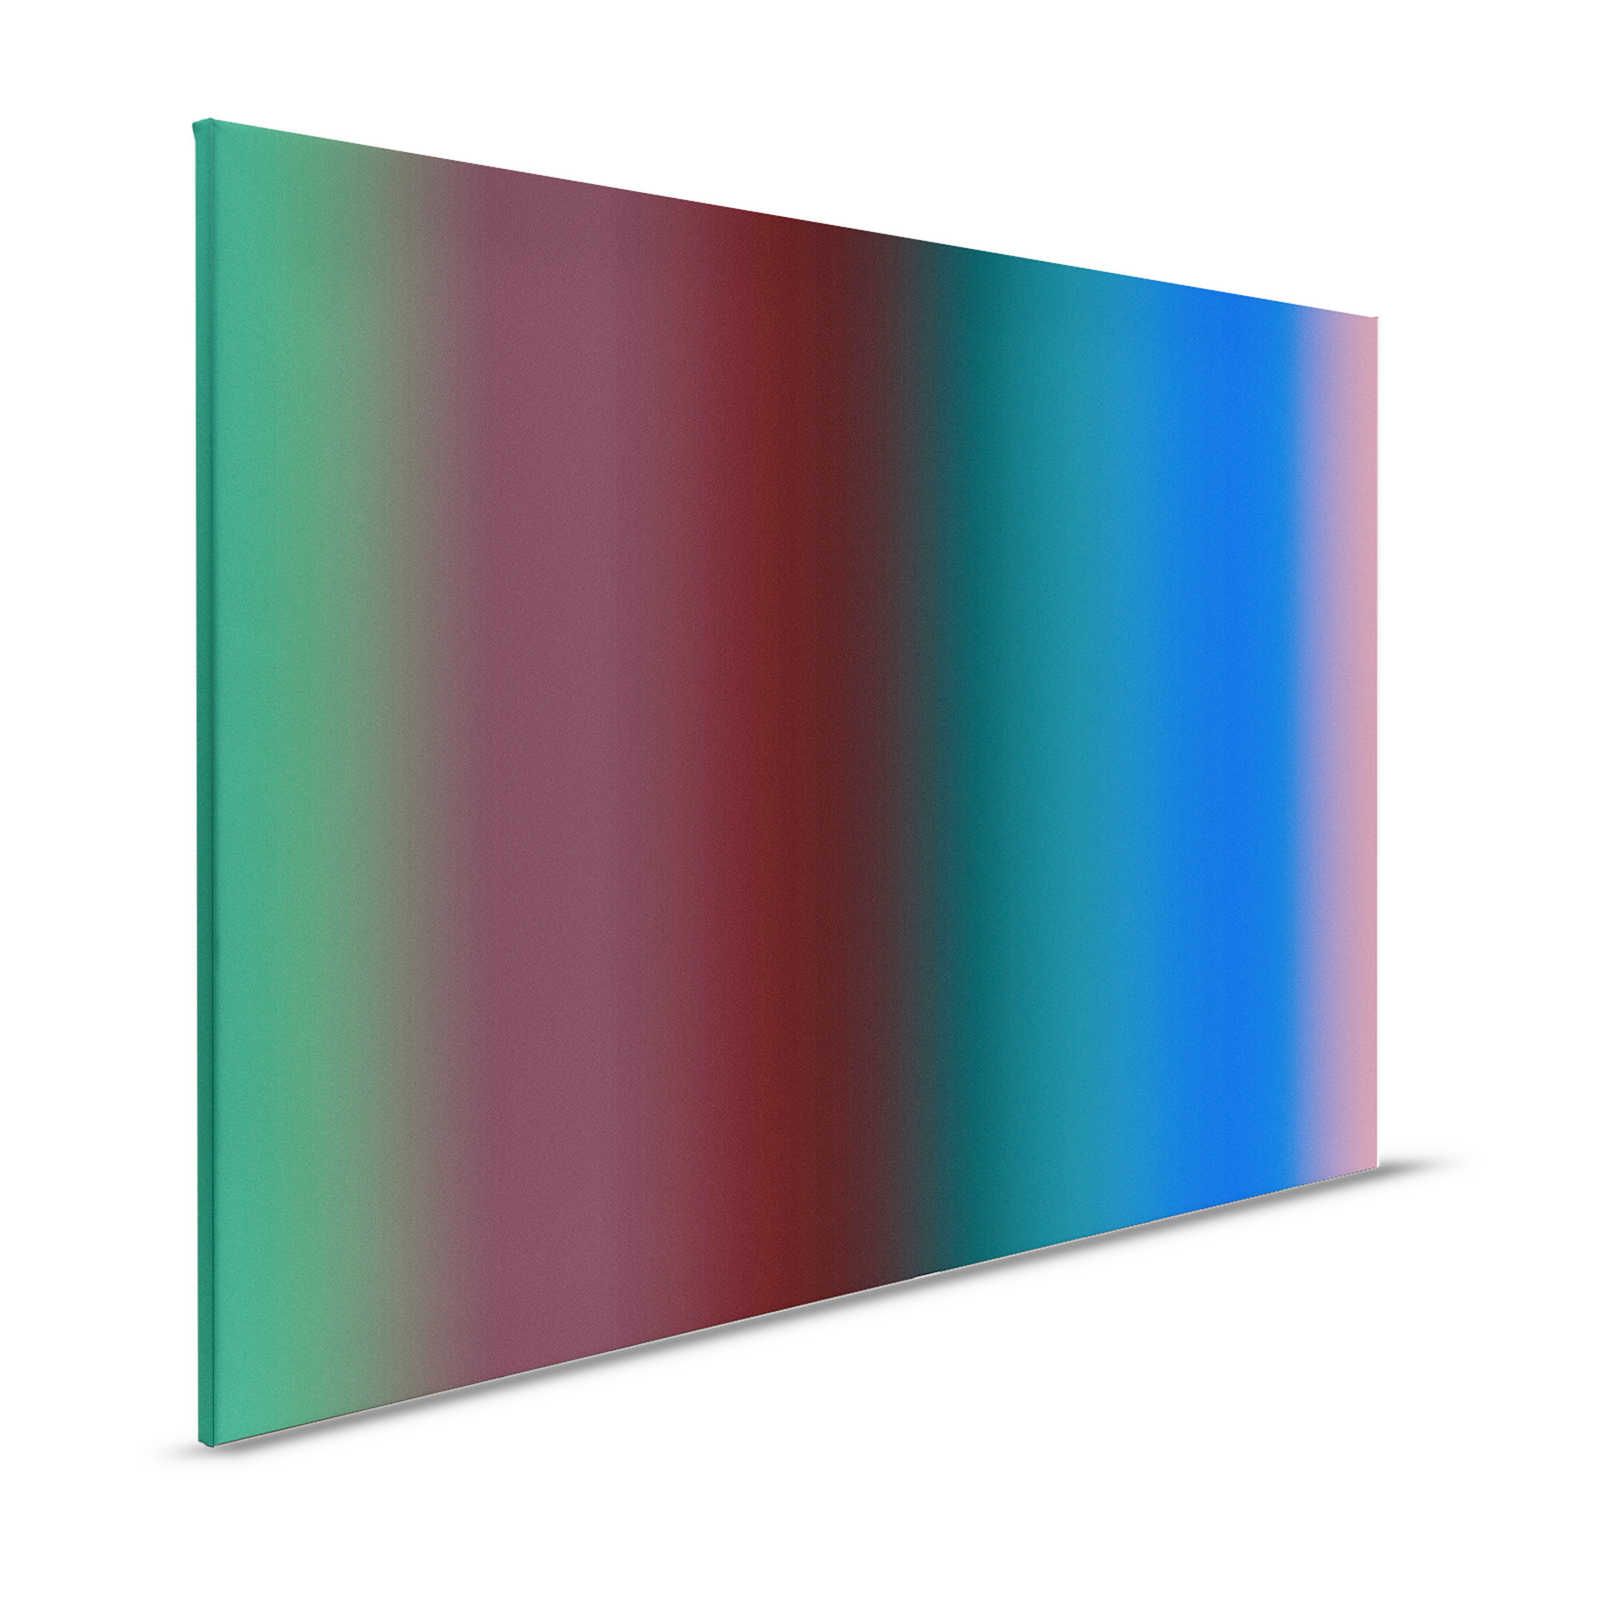 Over the Rainbow 2 - Bont streepdesign op canvas met kleurverloop - 1.20 m x 0.80 m
